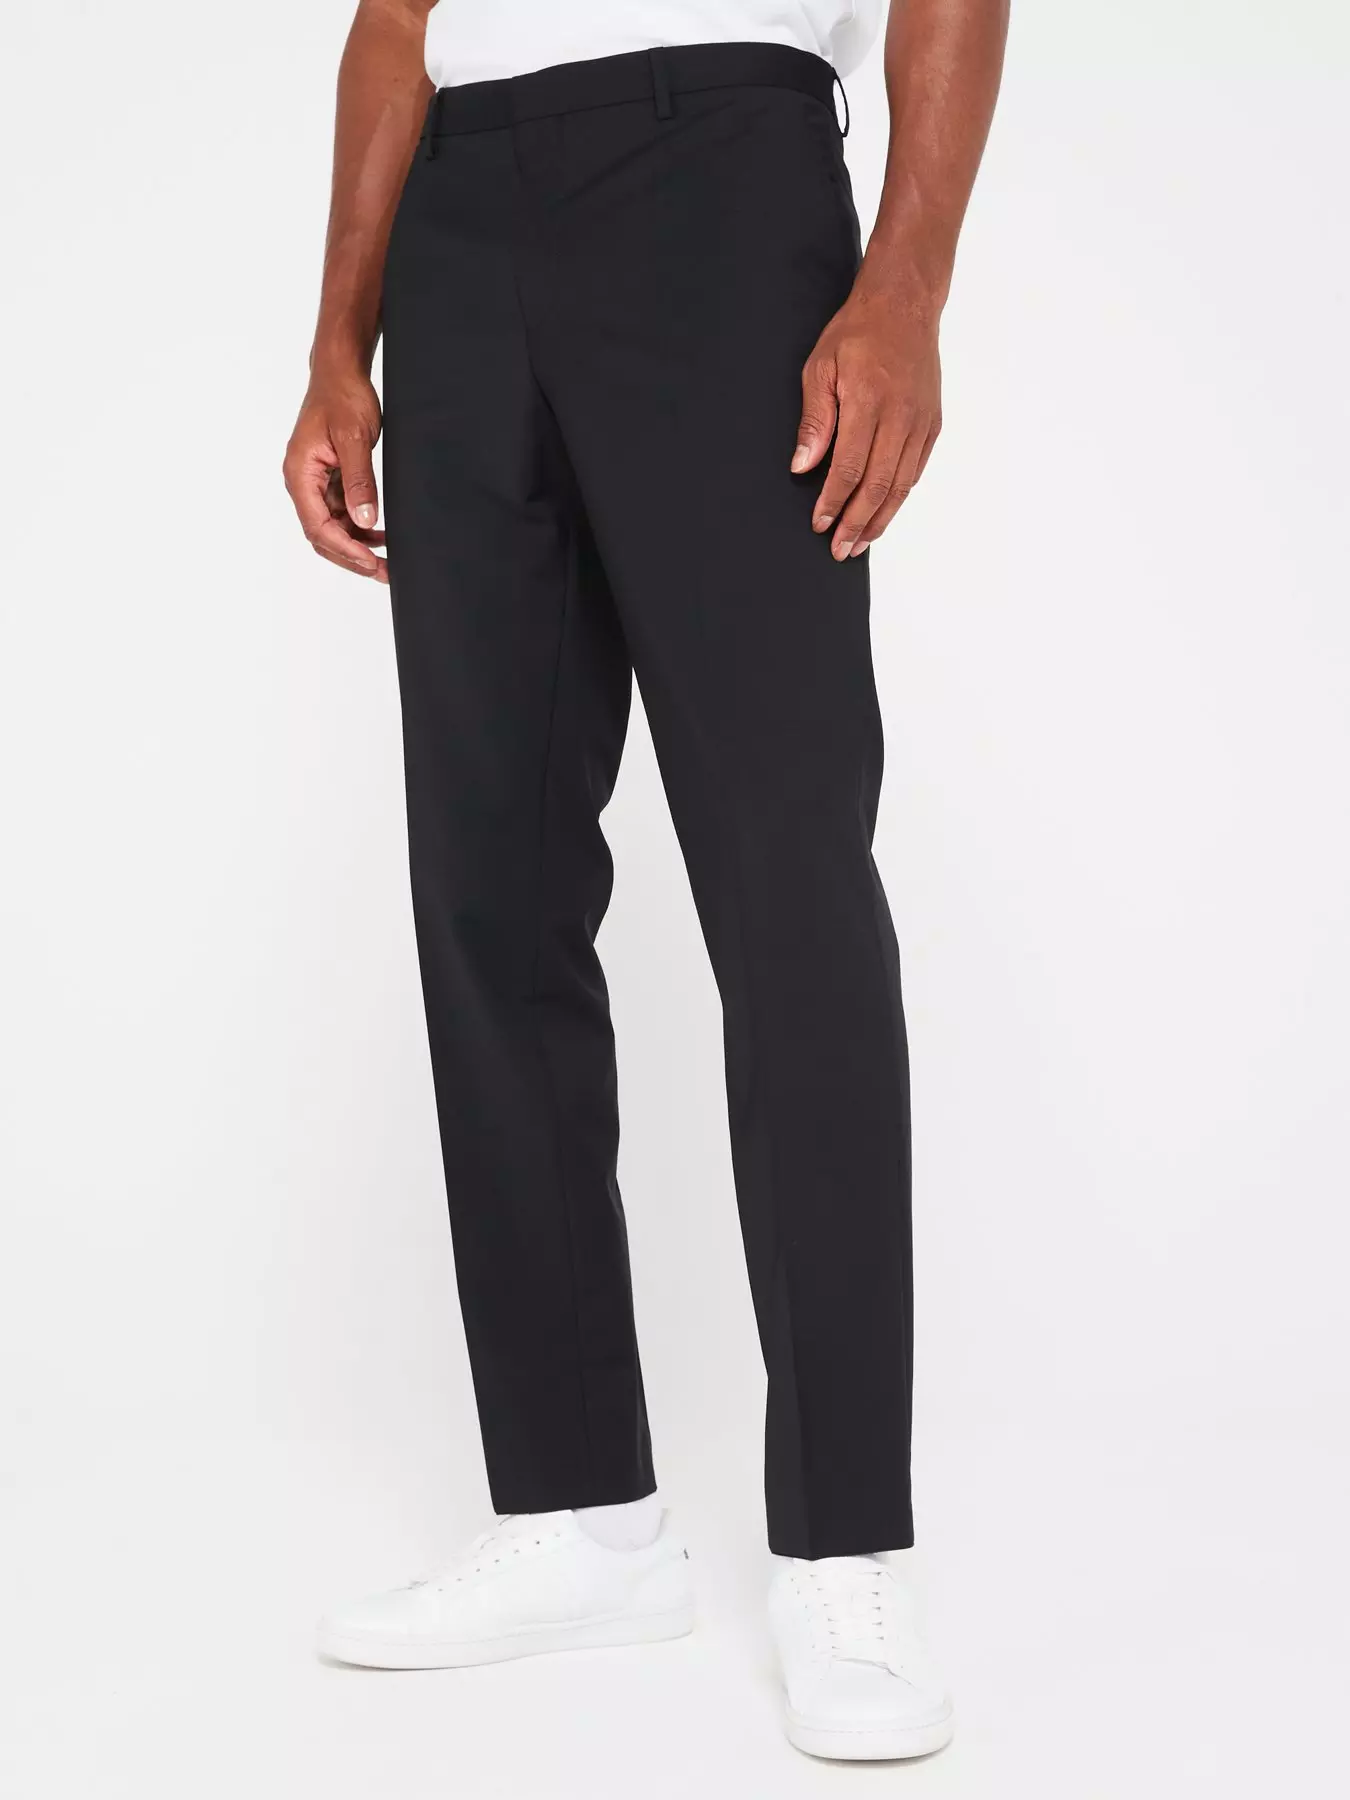 Slim fit B-91 Formal Black Textured Trousers - Texa